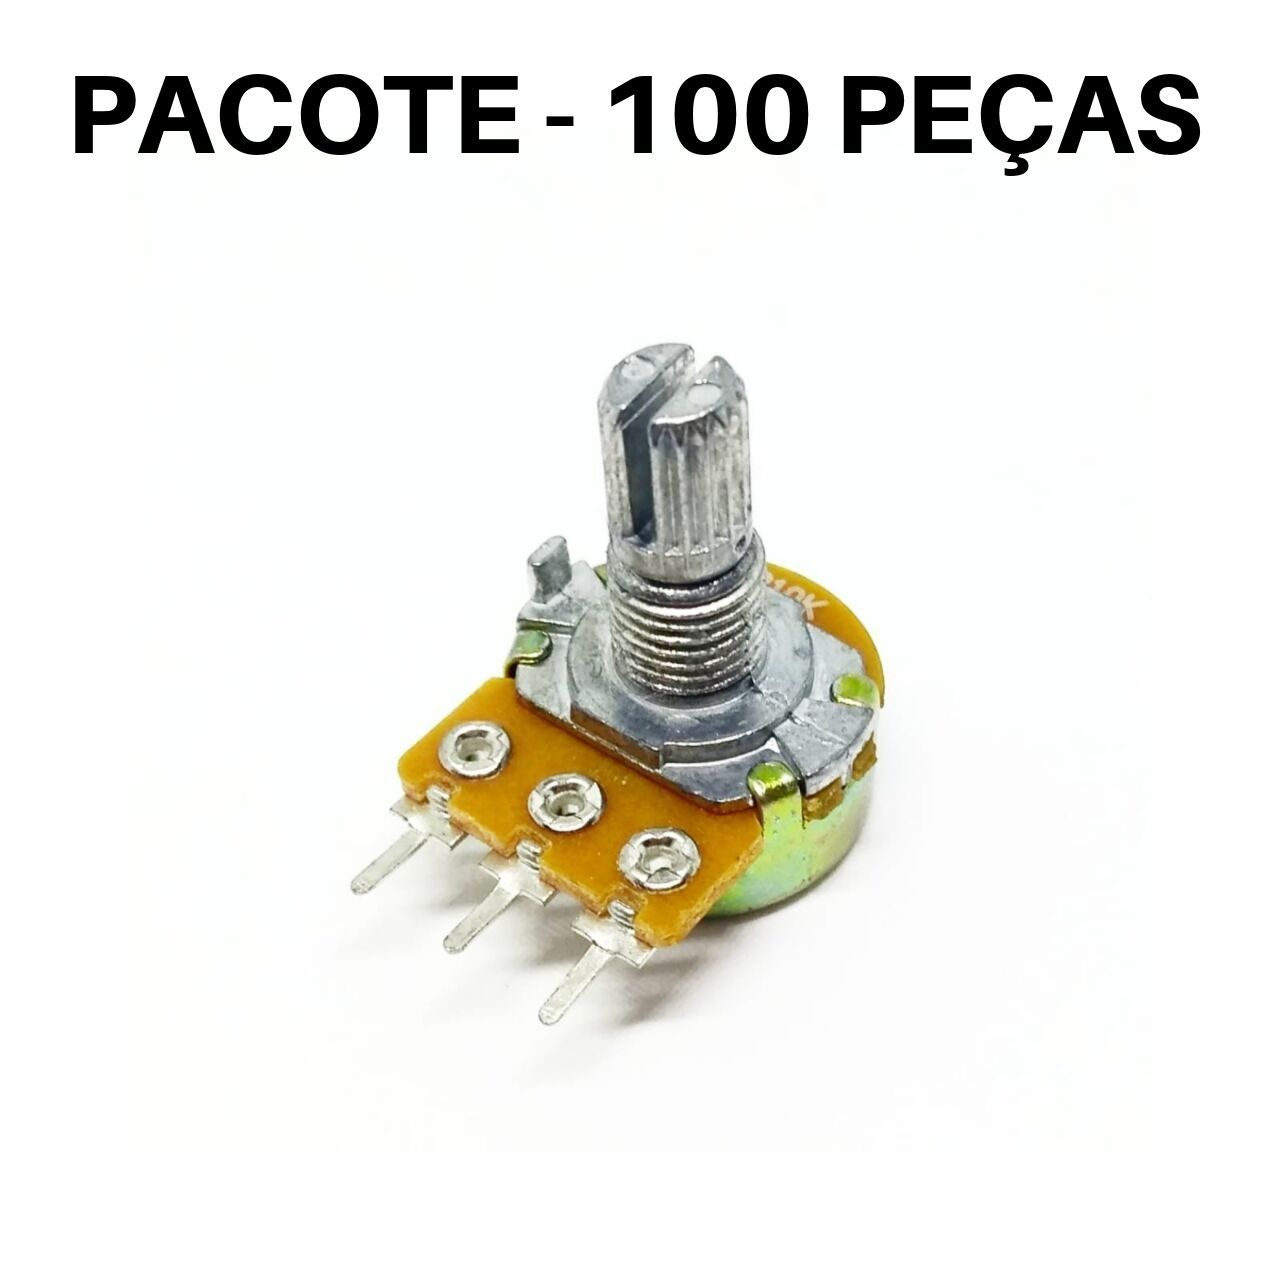 Pacote 100 peças - Potenciômetro Linear 10K L15 (B10K) - WH148-1